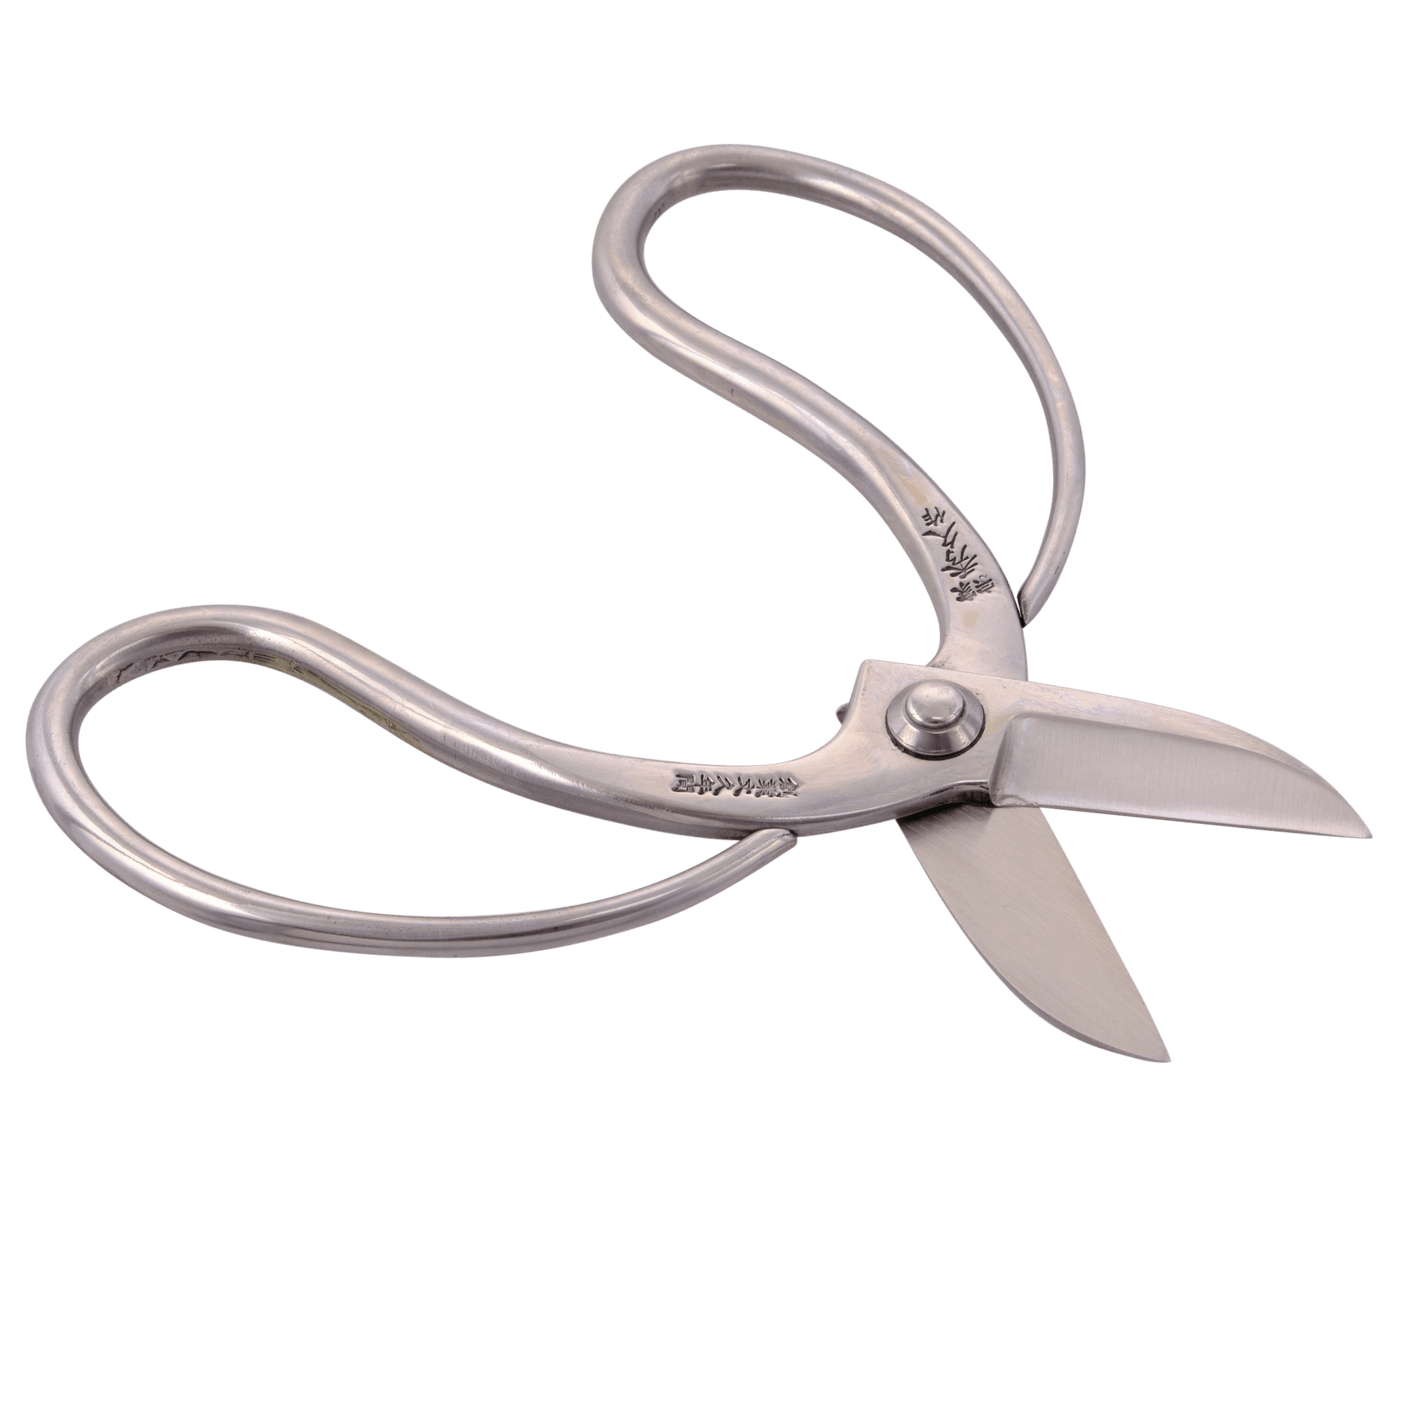 Stainless Steel Ikebana Scissors - Bonsai Tools - Japanese Tools Australia